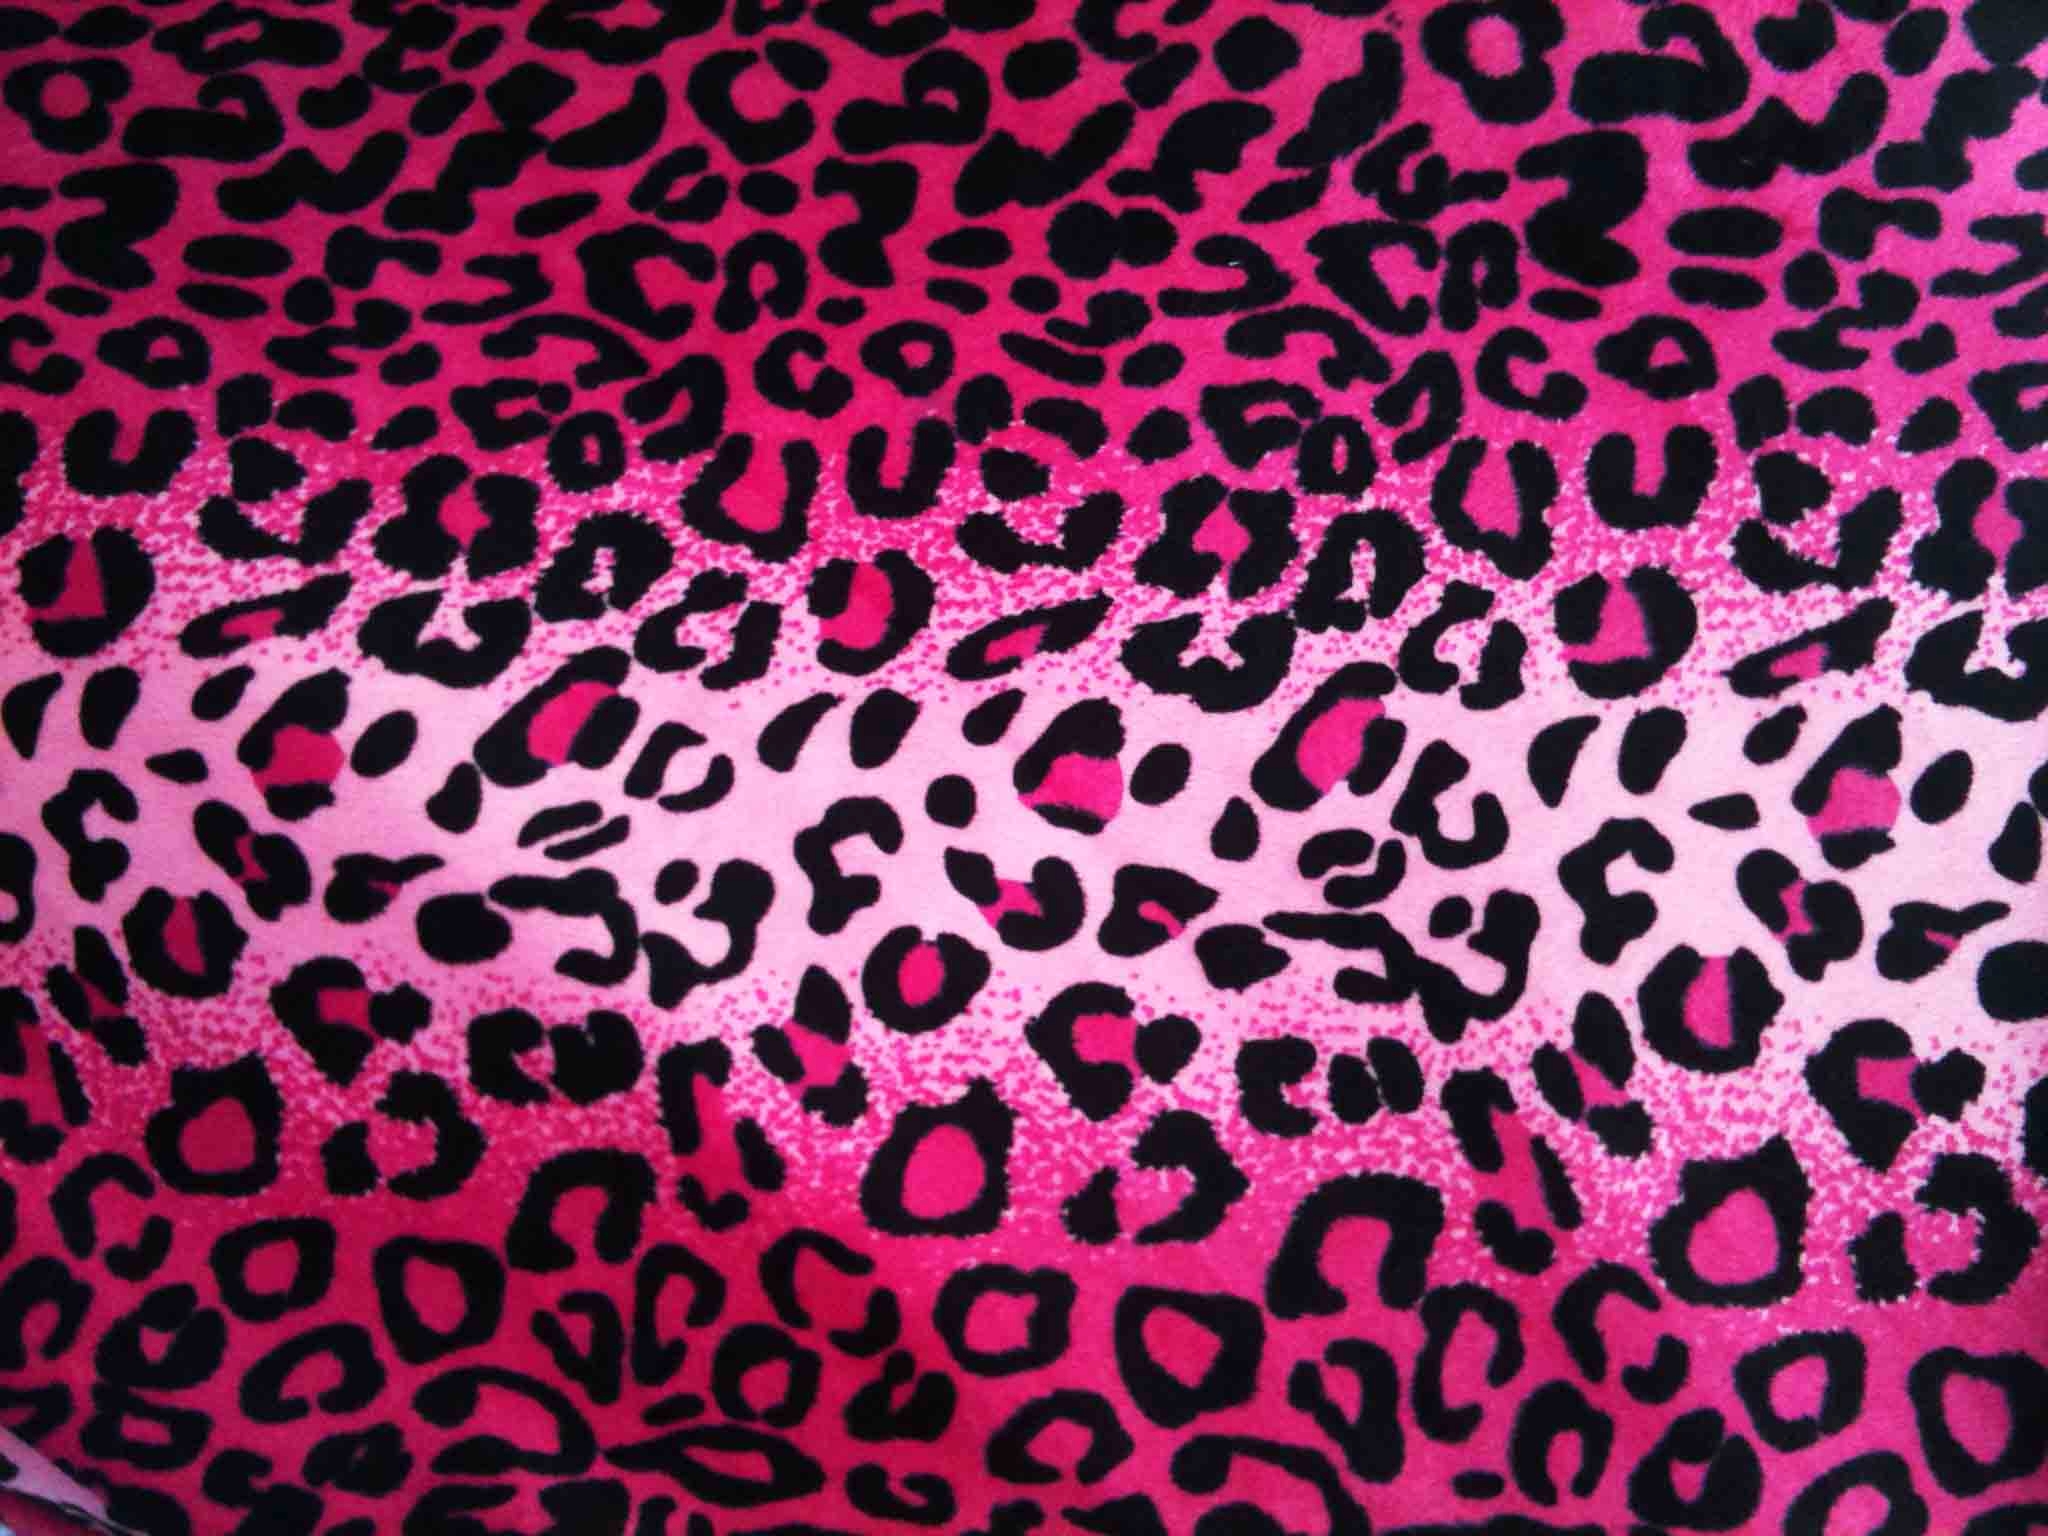  wallpaper Pink Cheetah Backgrounds hd wallpaper background desktop 2048x1536